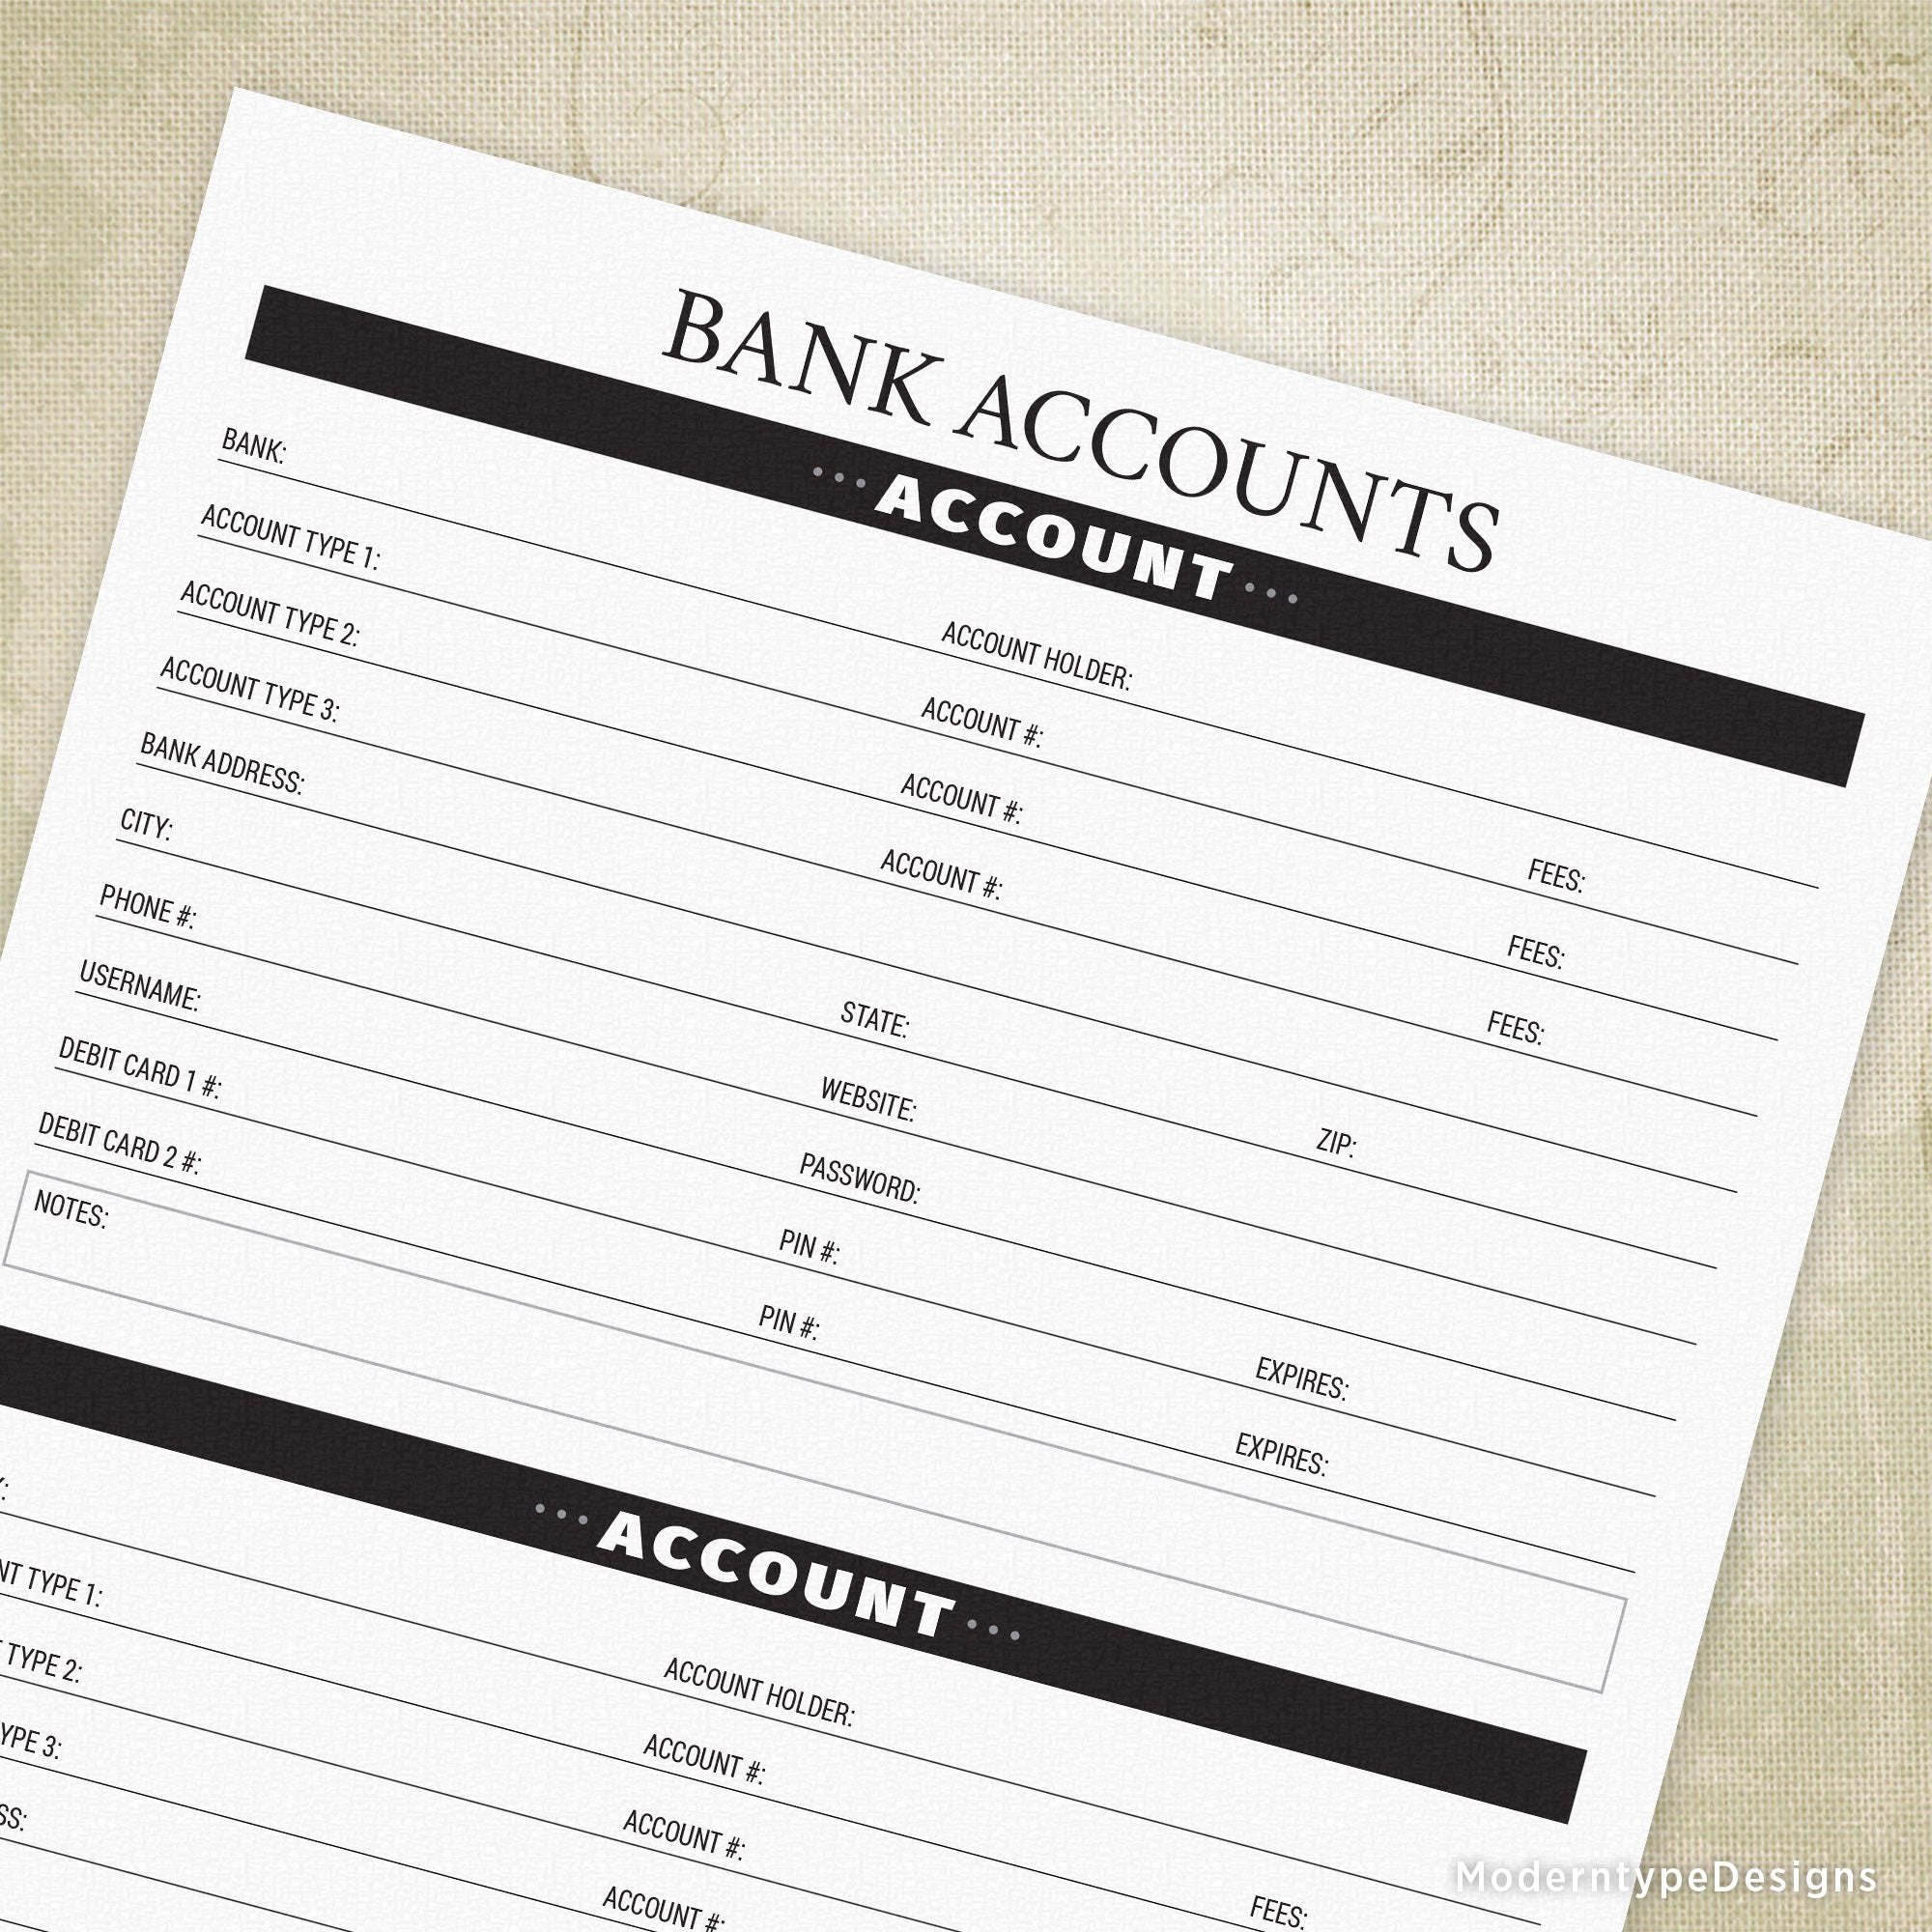 Bank Accounts Printable - End of Life